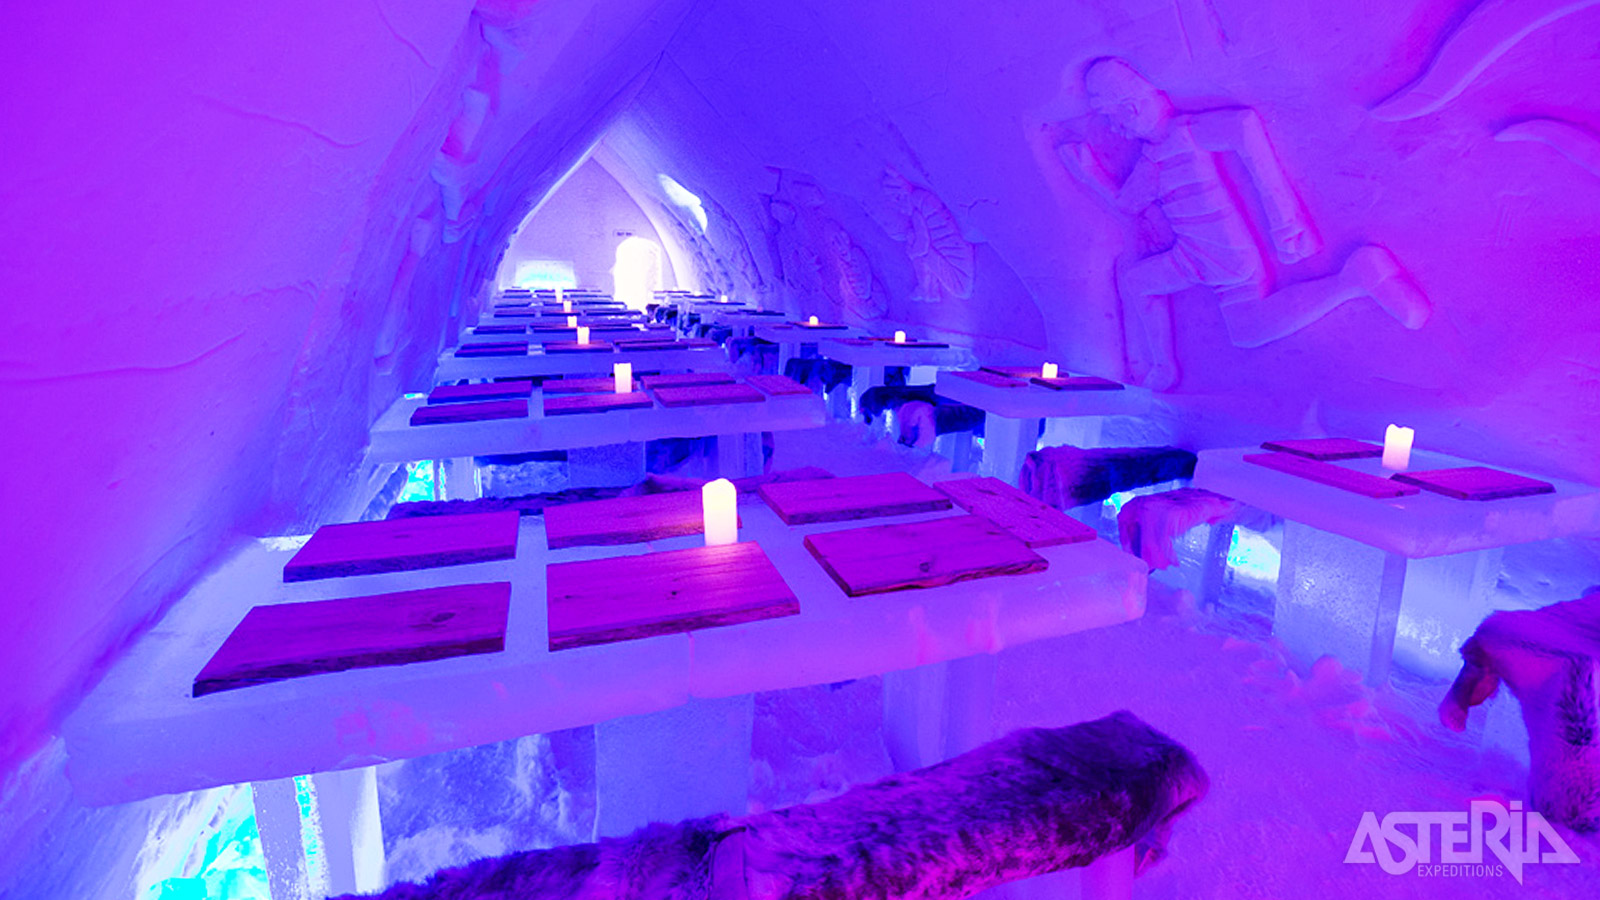 Om je ervaring compleet te maken is er een 3-gangendiner in het Ice Restaurant voorzien